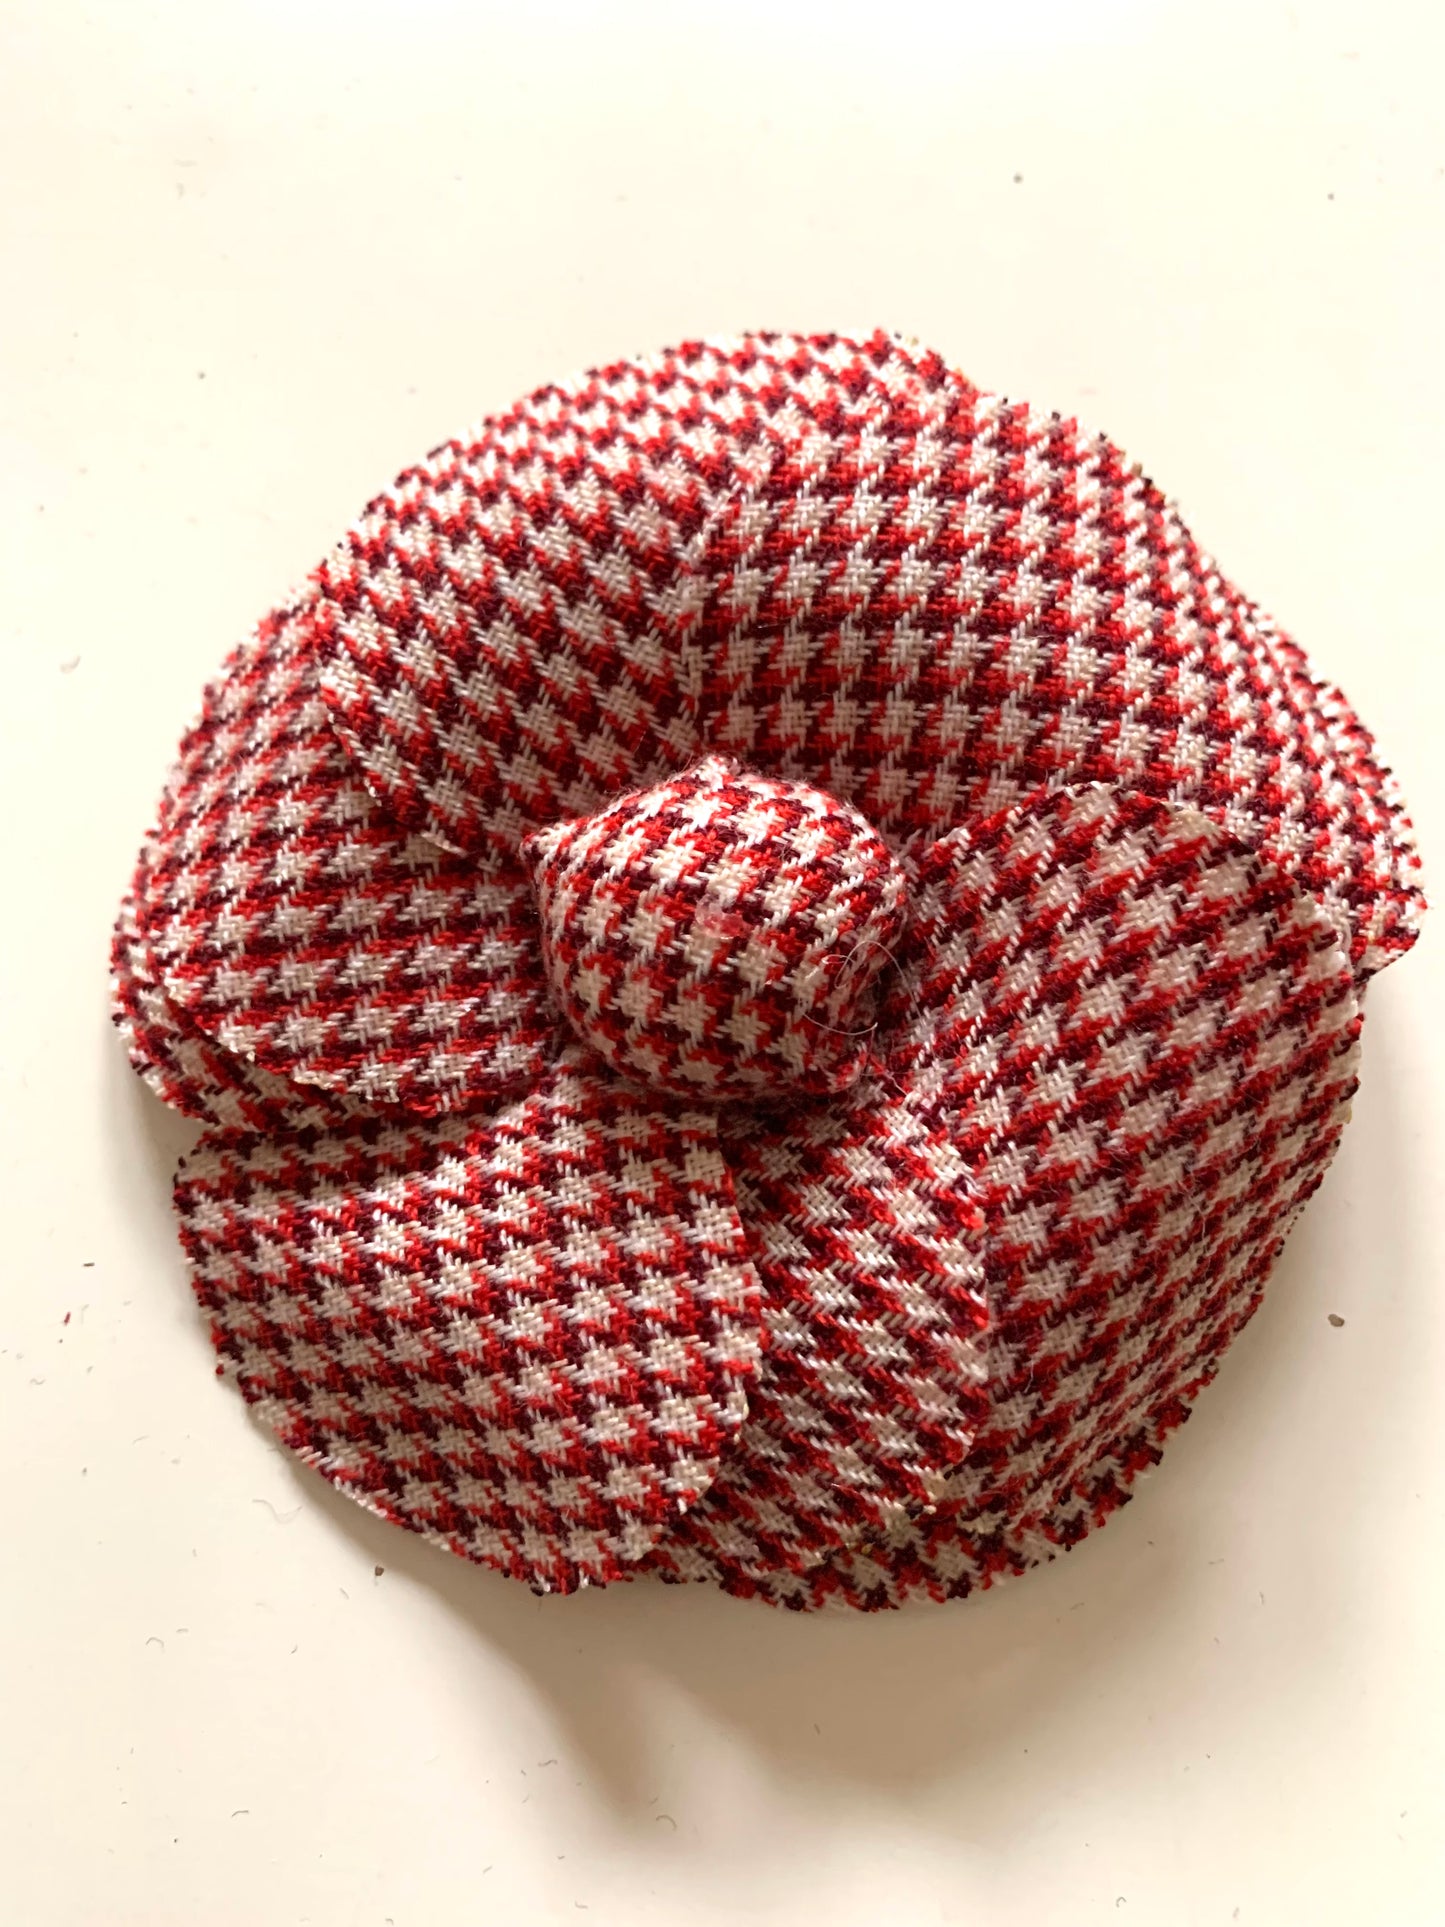 Flower Brooch| Tweed Wool Fabric Red Beige Small